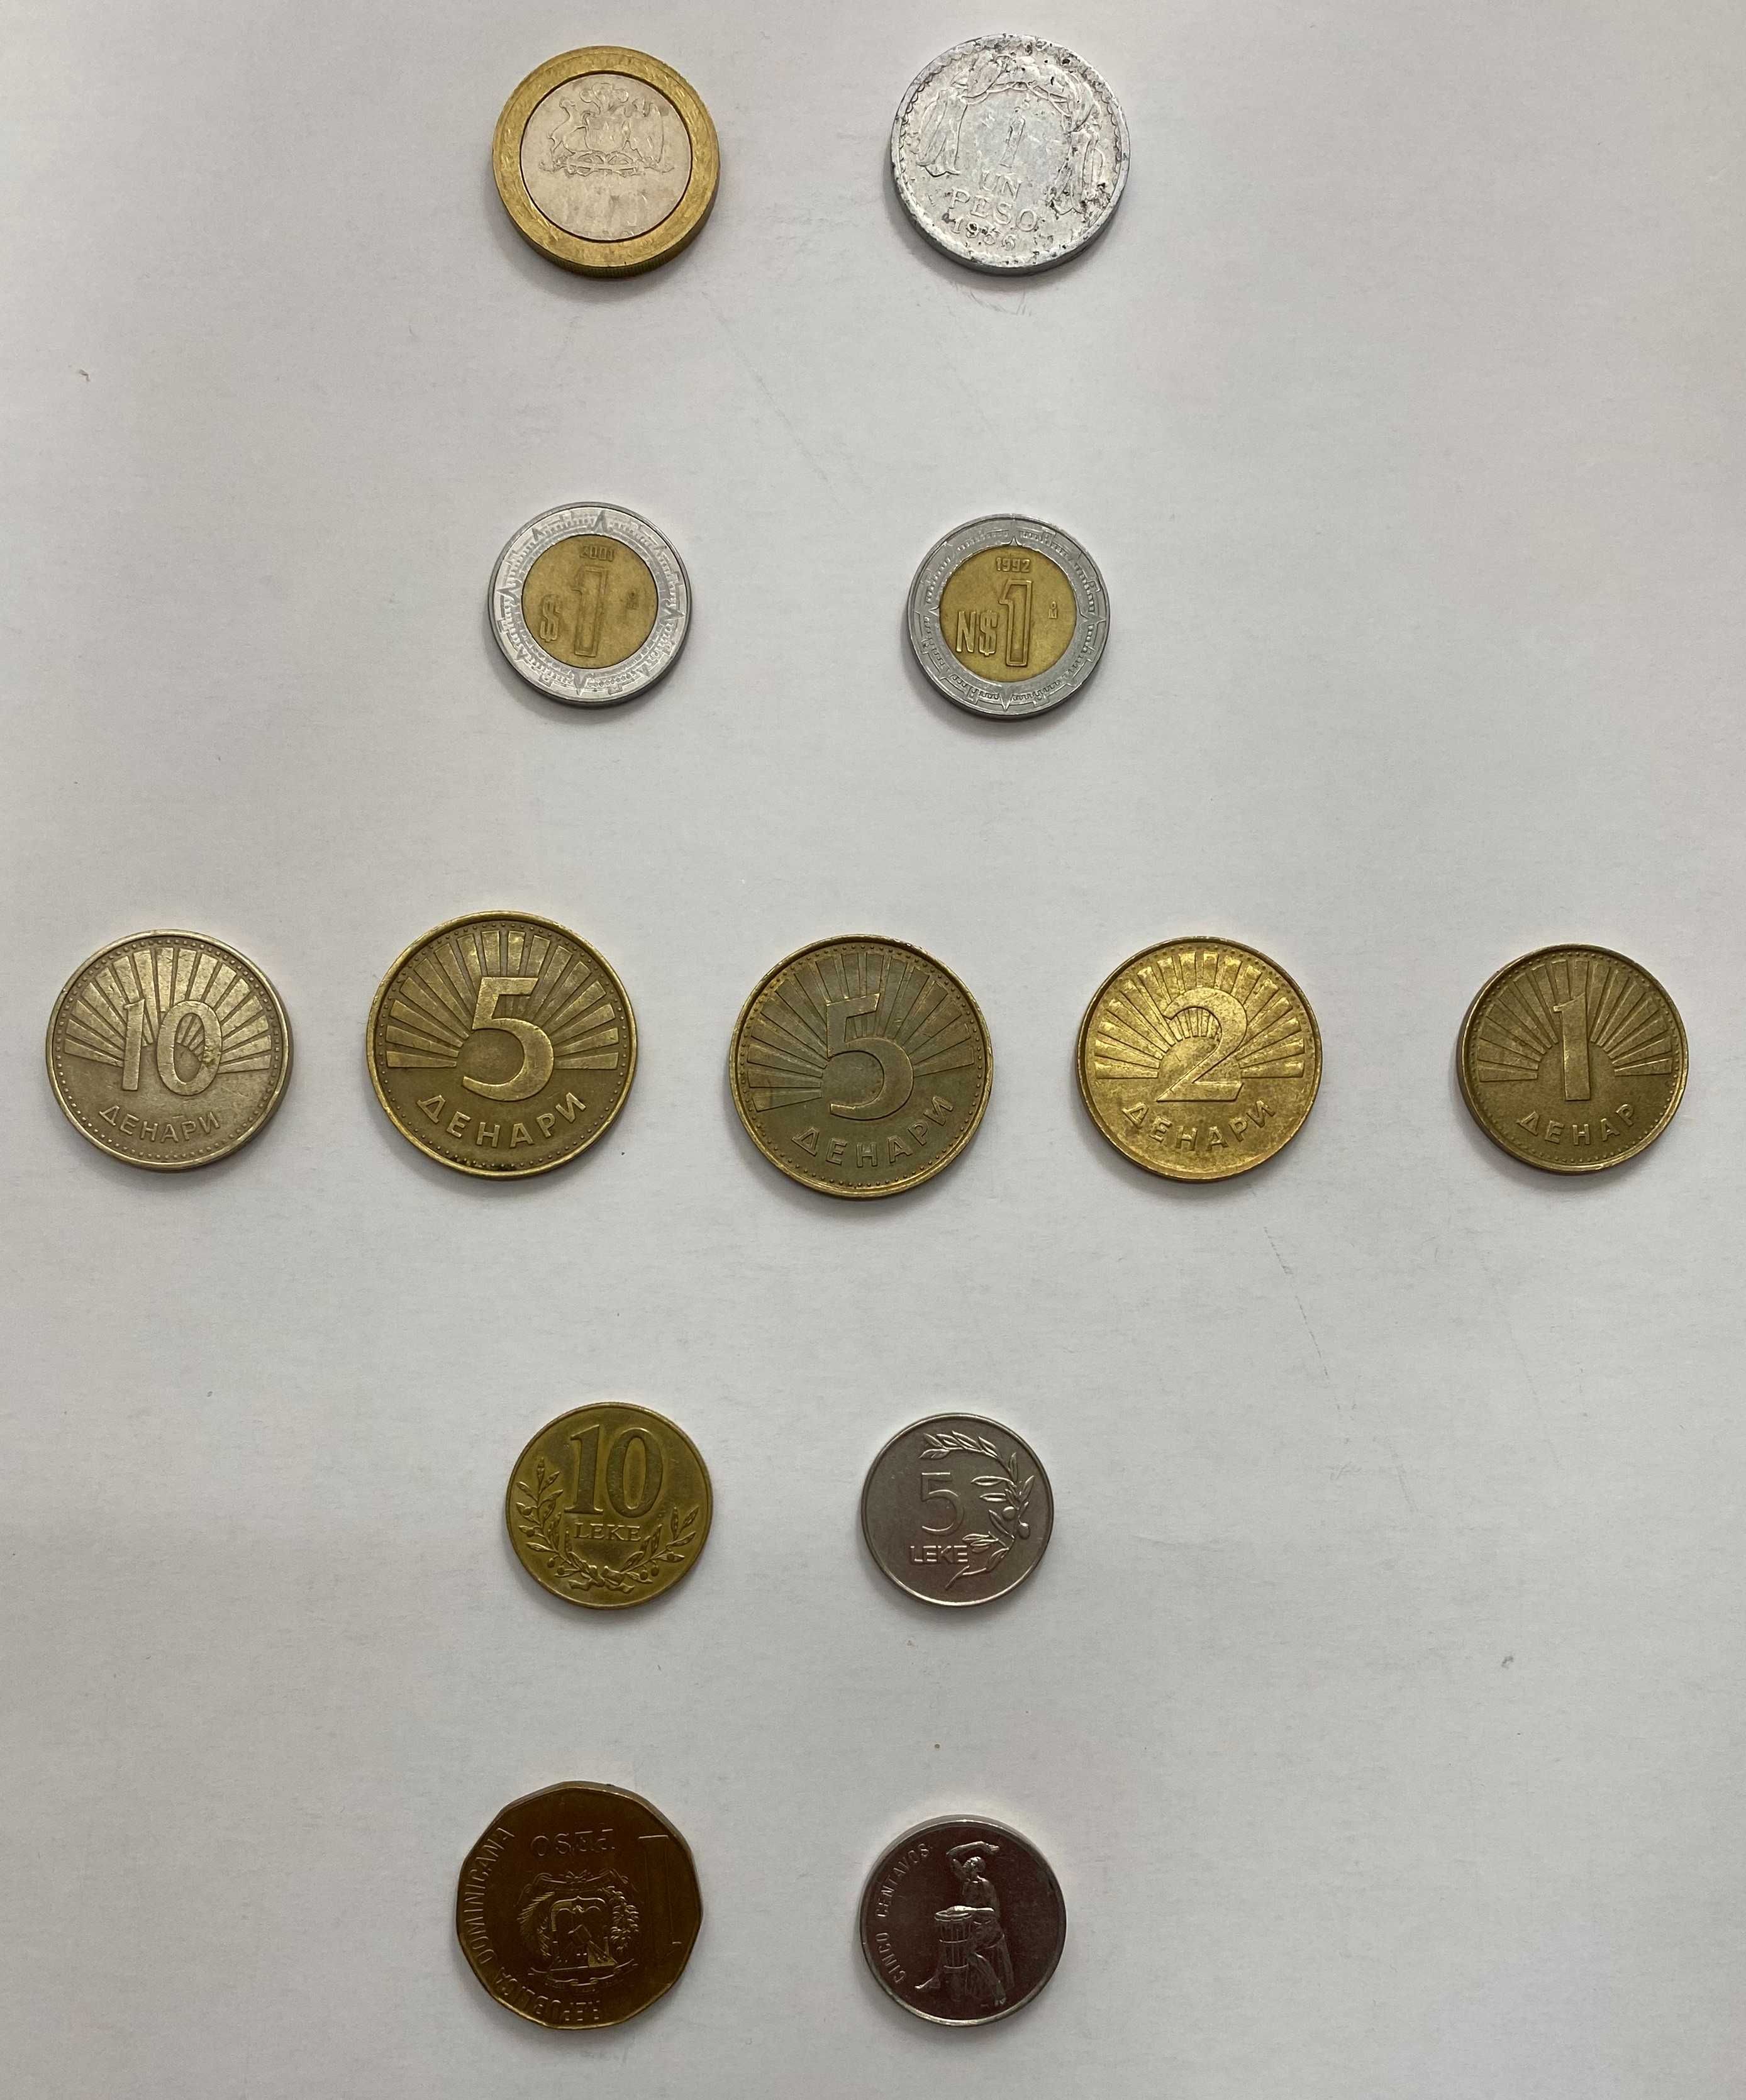 Монеты Мексики Чили Македонии Албании Доминиканской республики